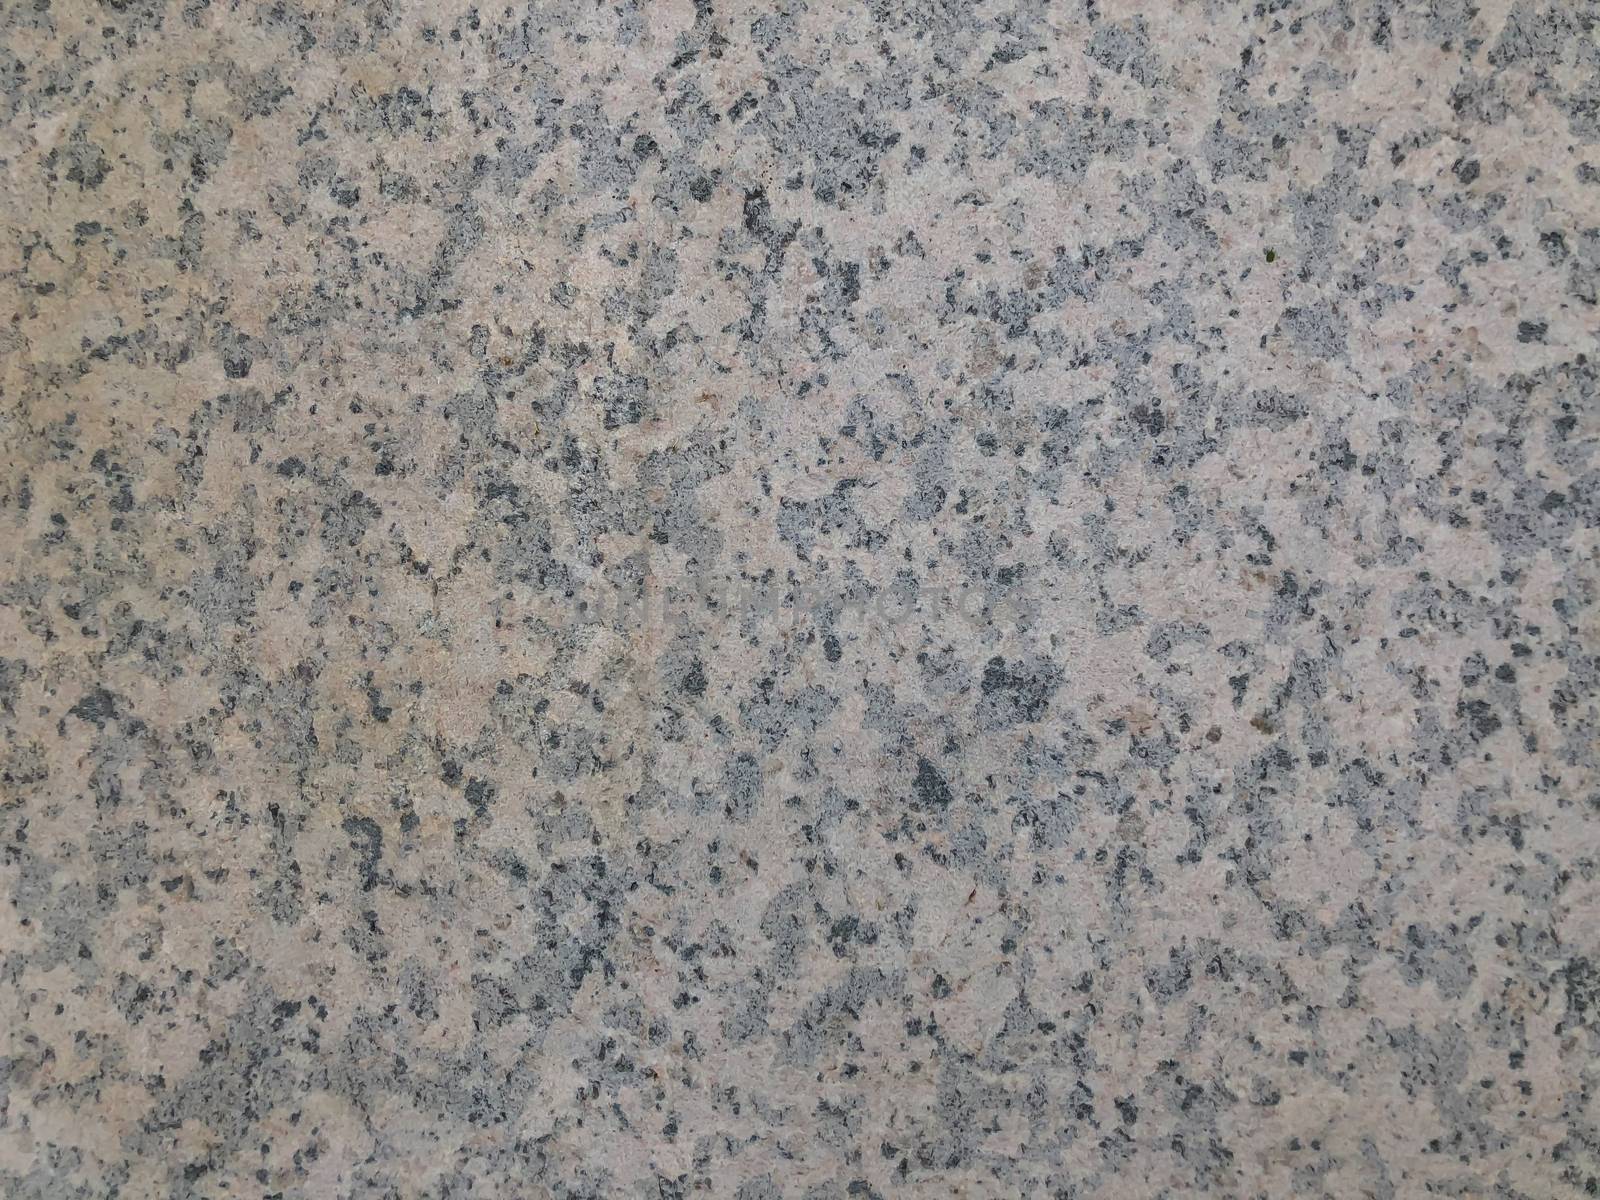 Glance gray granite stone texture background by AlonaGryadovaya